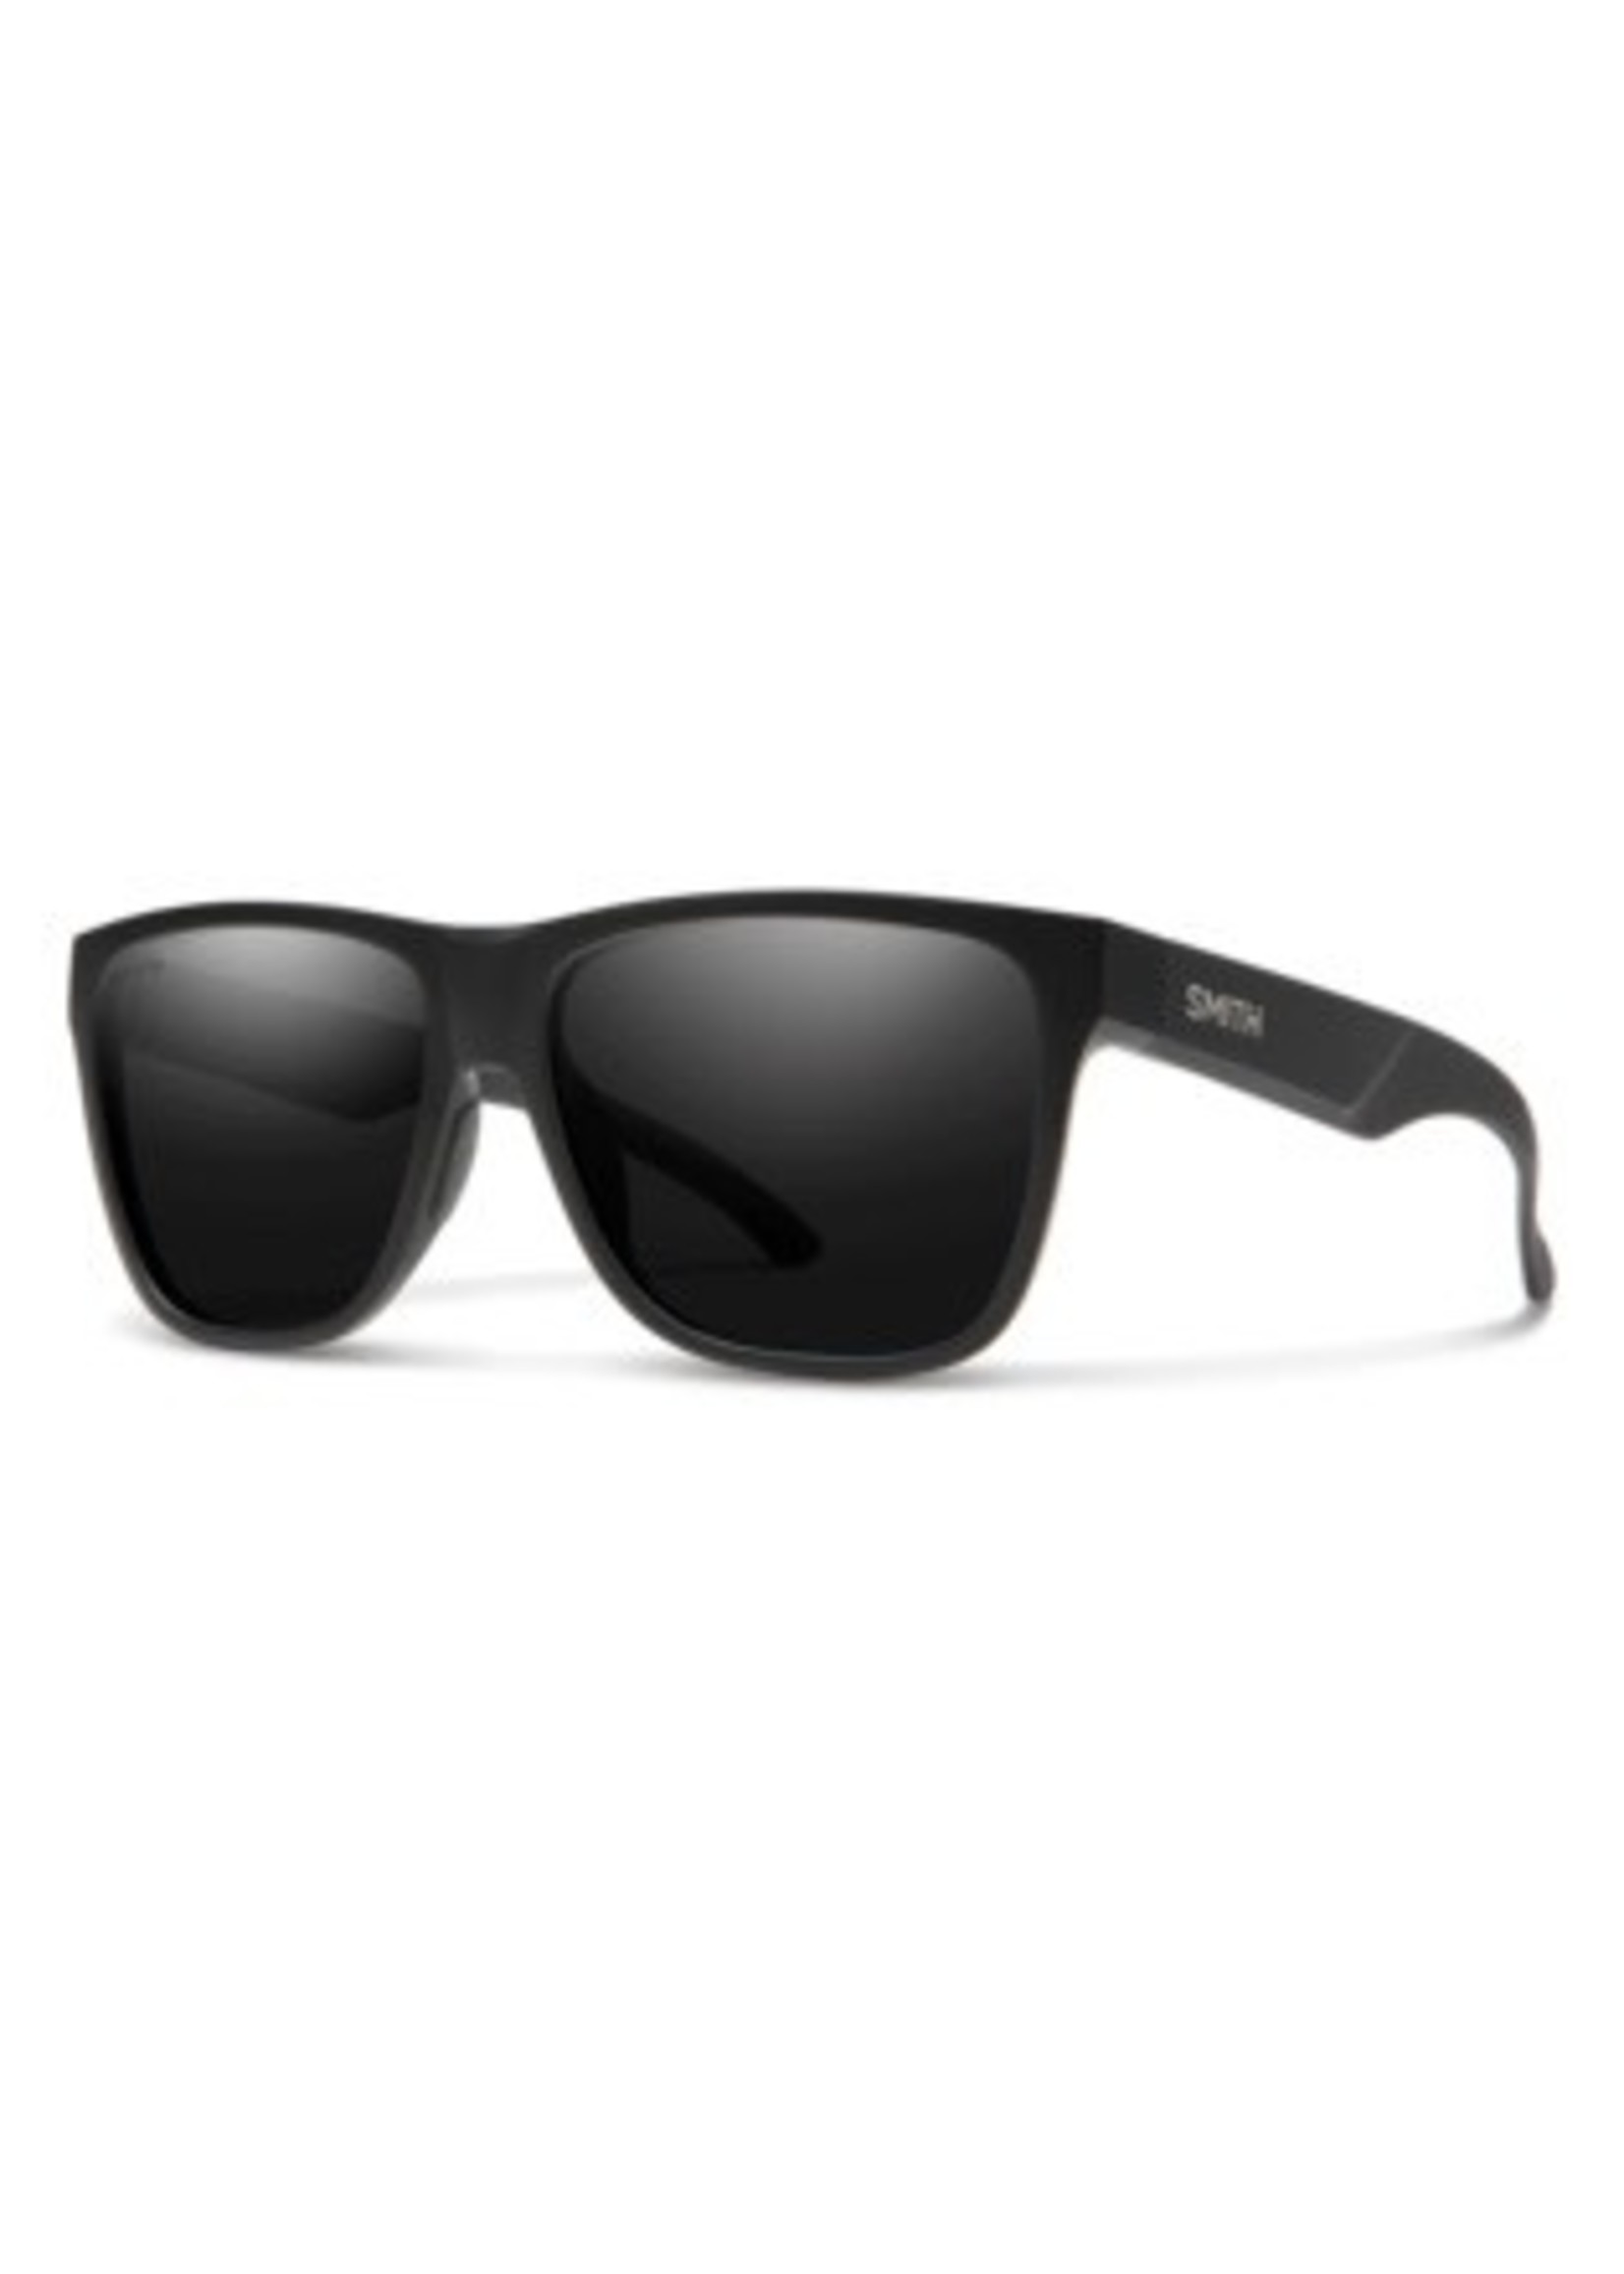 Smith Sunglasses Lowdown XL 2